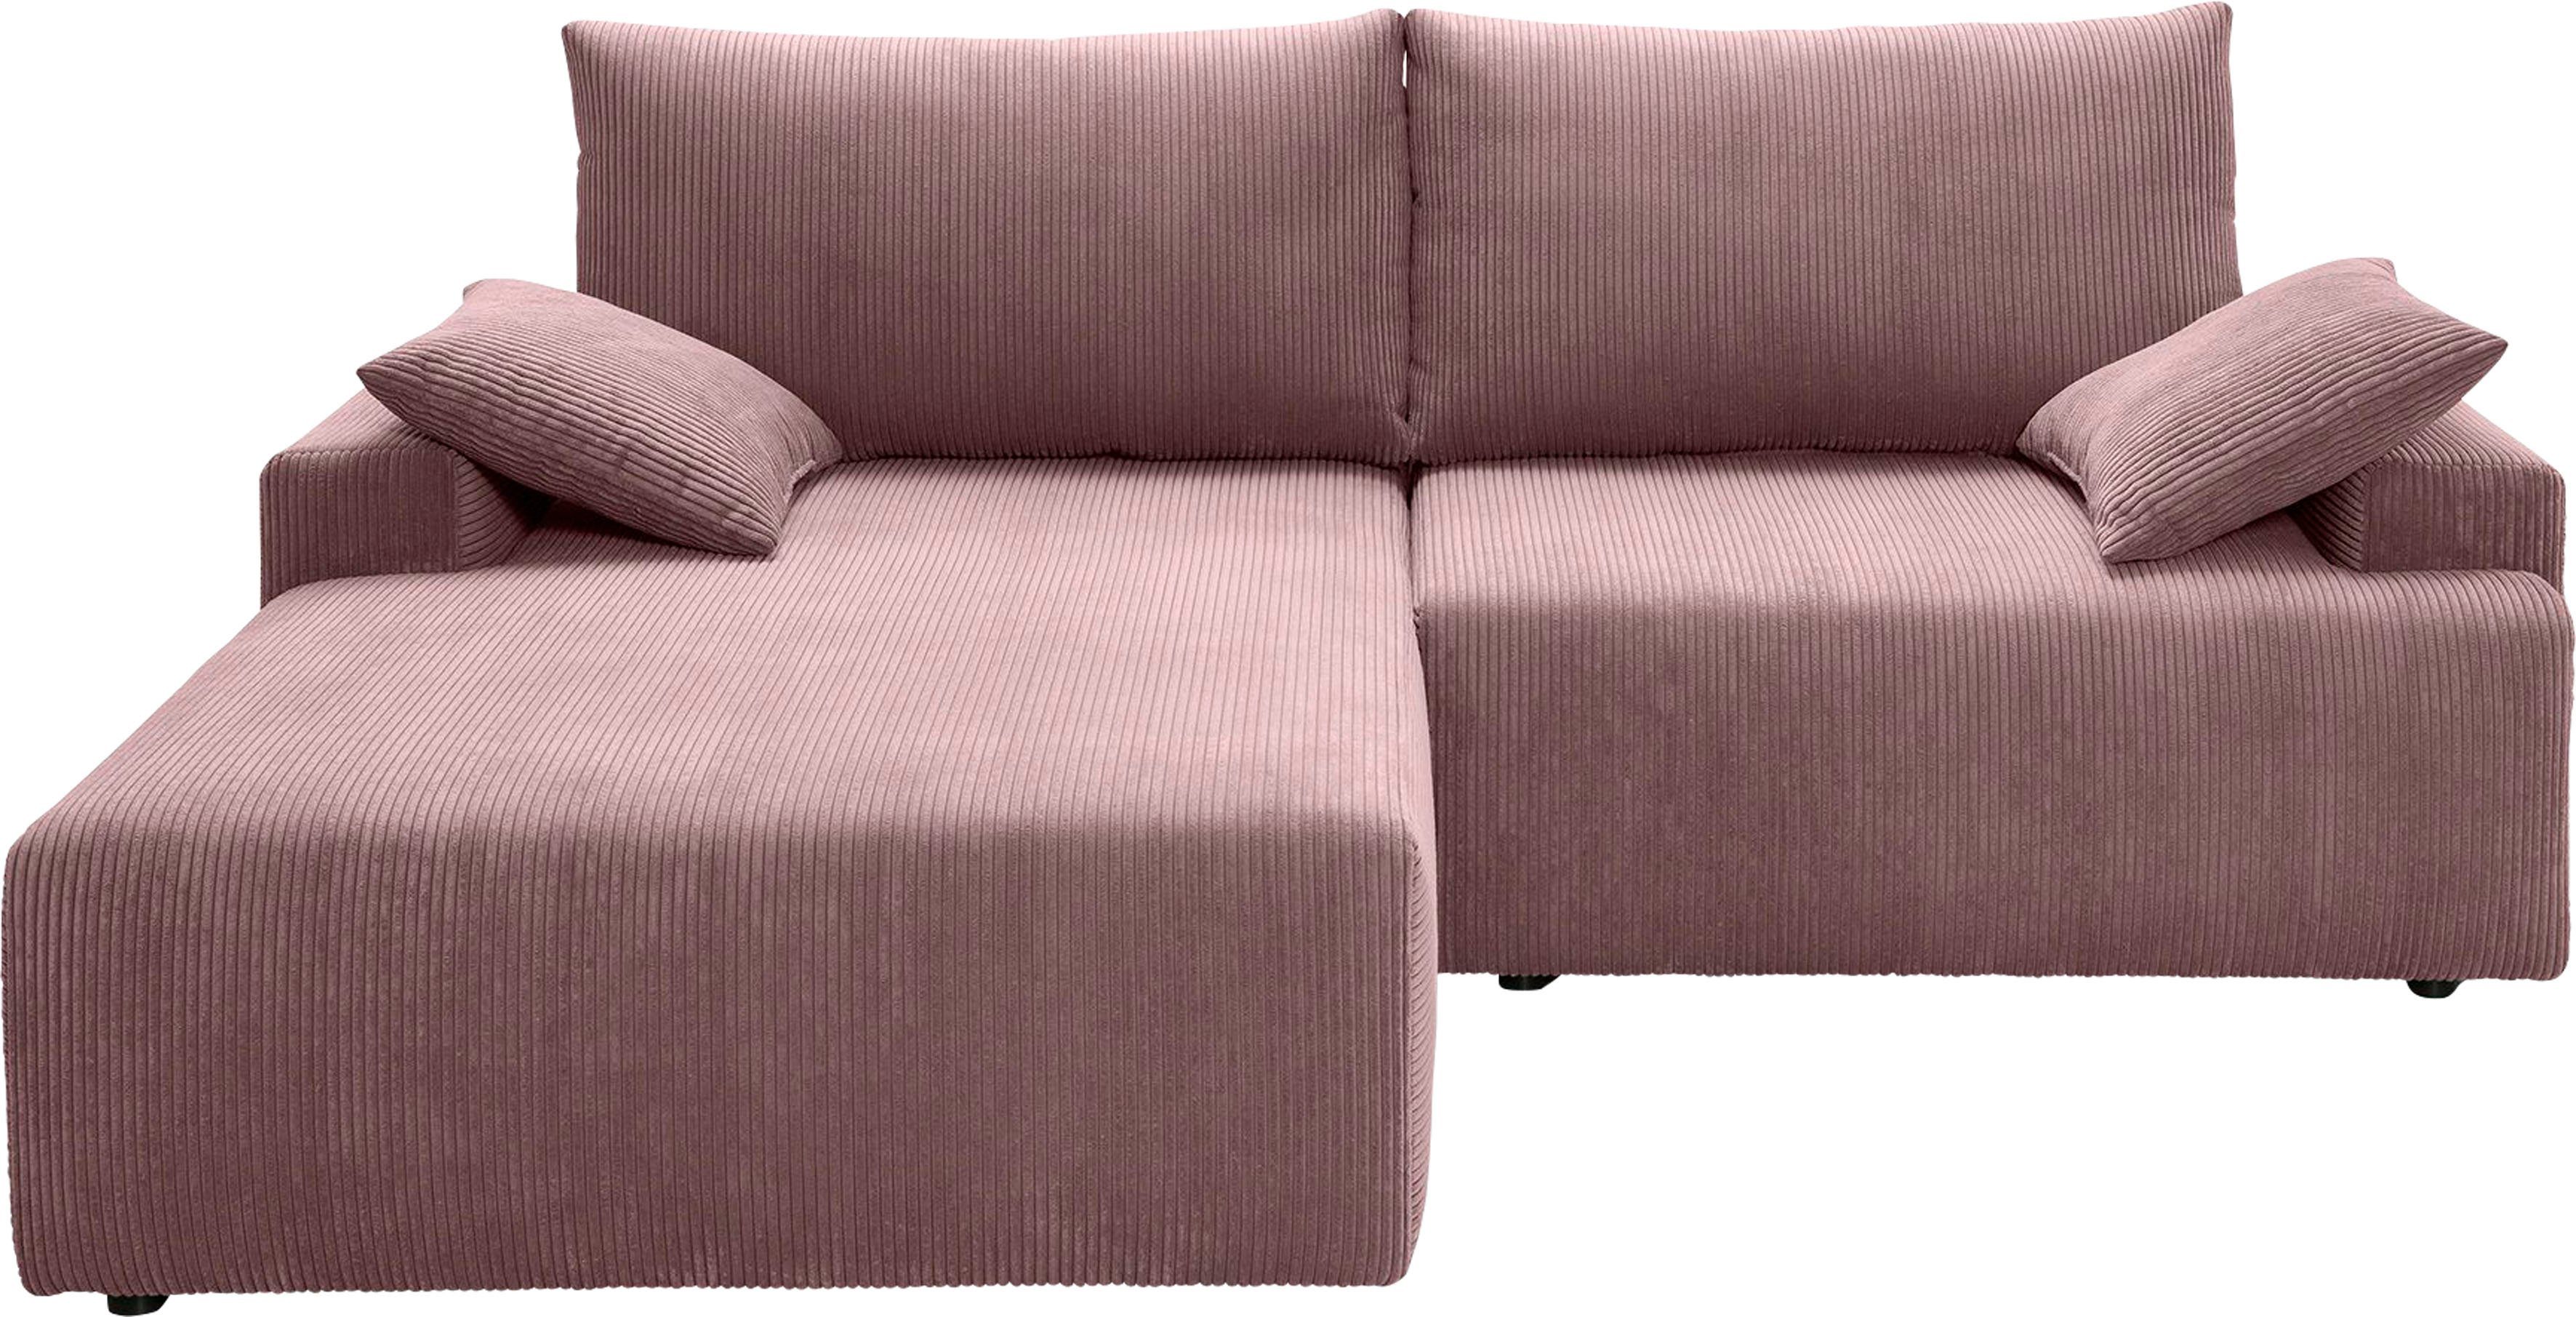 Cord-Farben - sofa Orinoko, fashion Bettkasten und Bettfunktion in rose exxpo Ecksofa verschiedenen inklusive